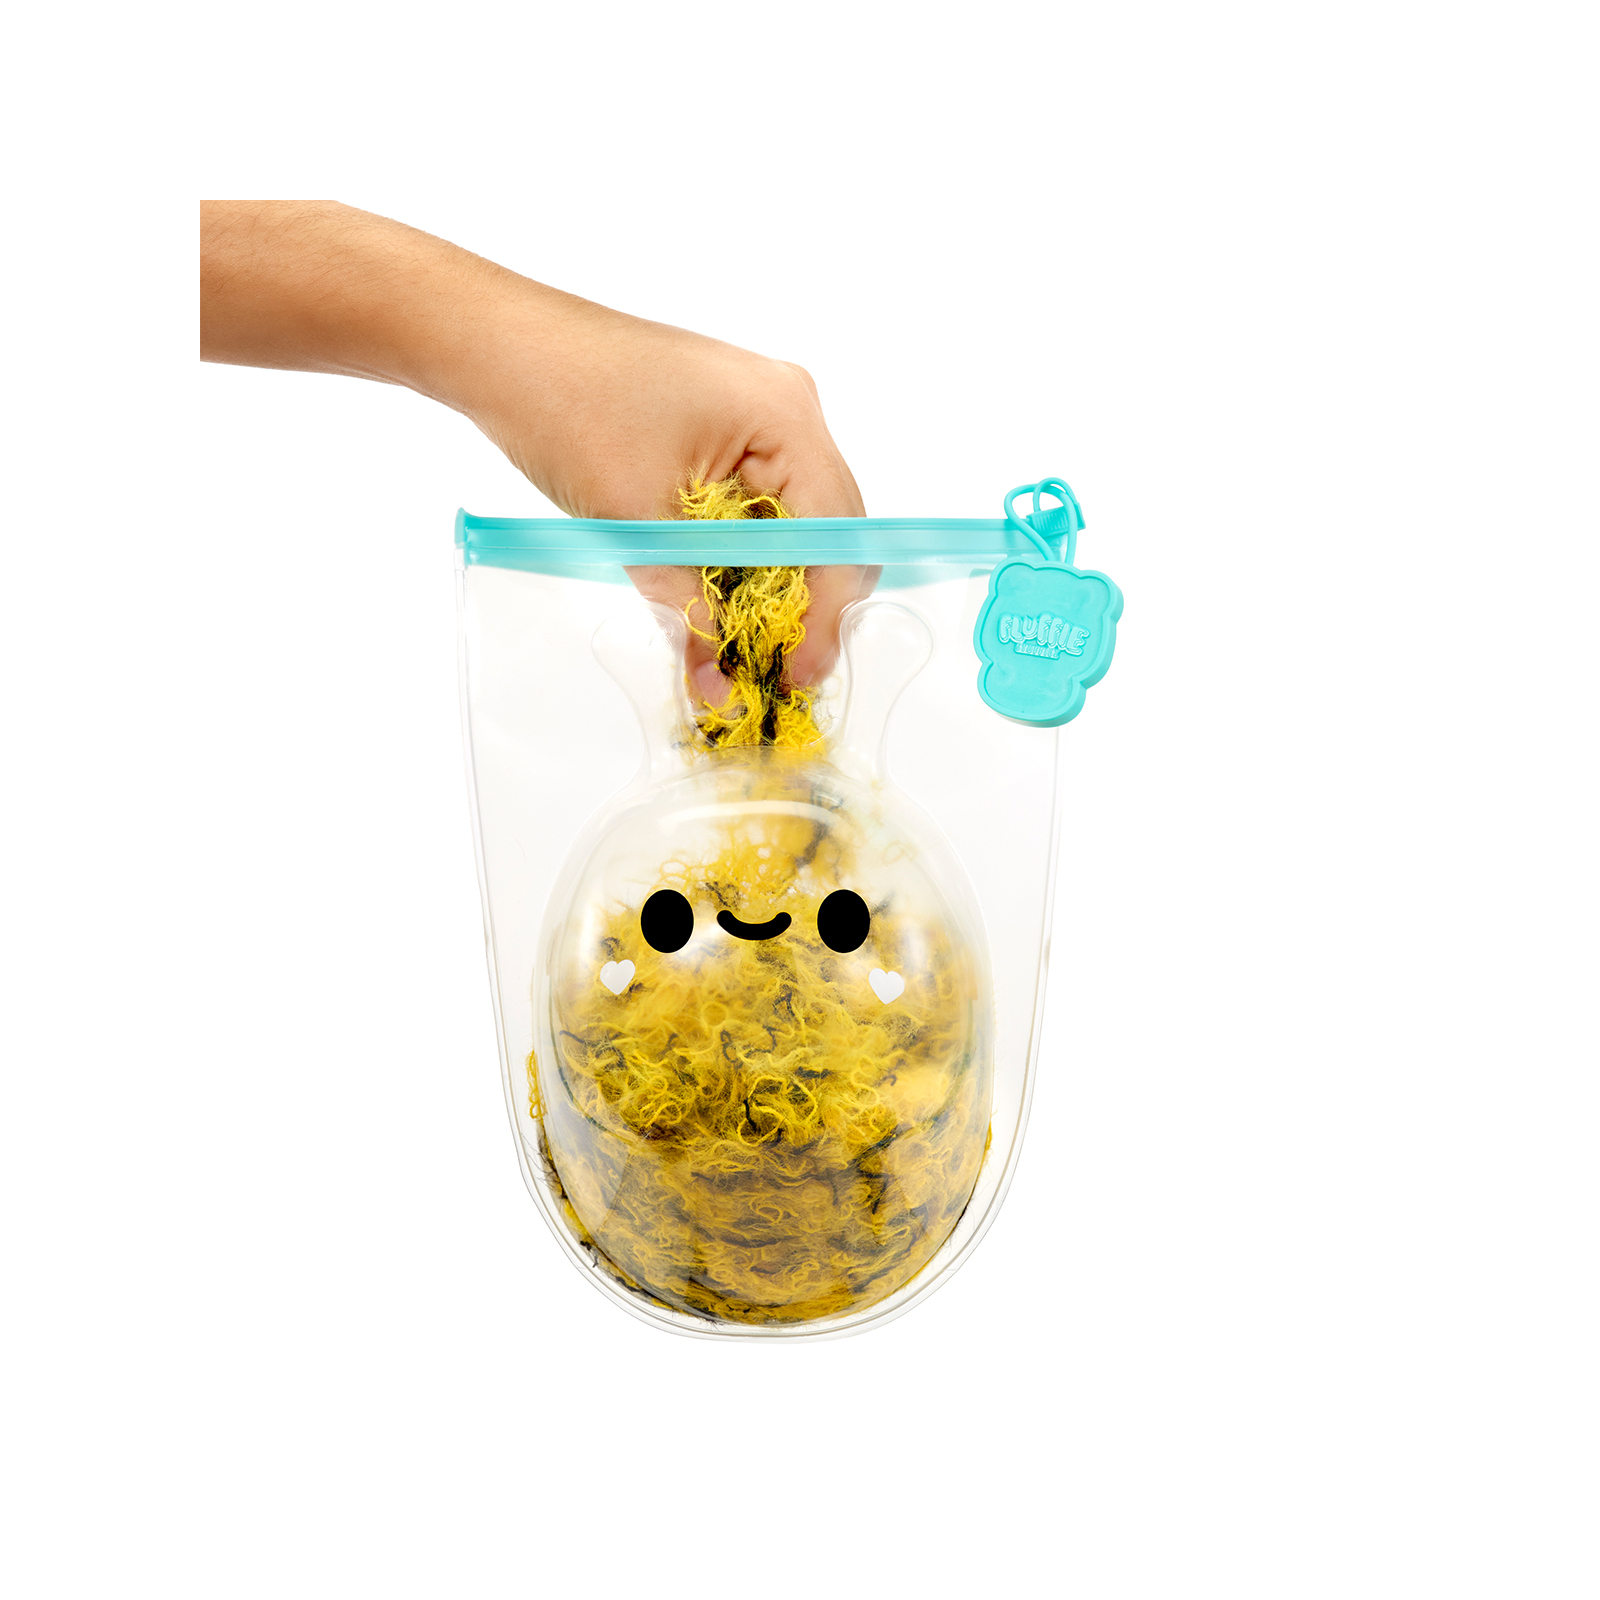 Развивающая игрушка Battat антистресс серии Small Plush-Пчелка/Солнышко (594475-5) изображение 7